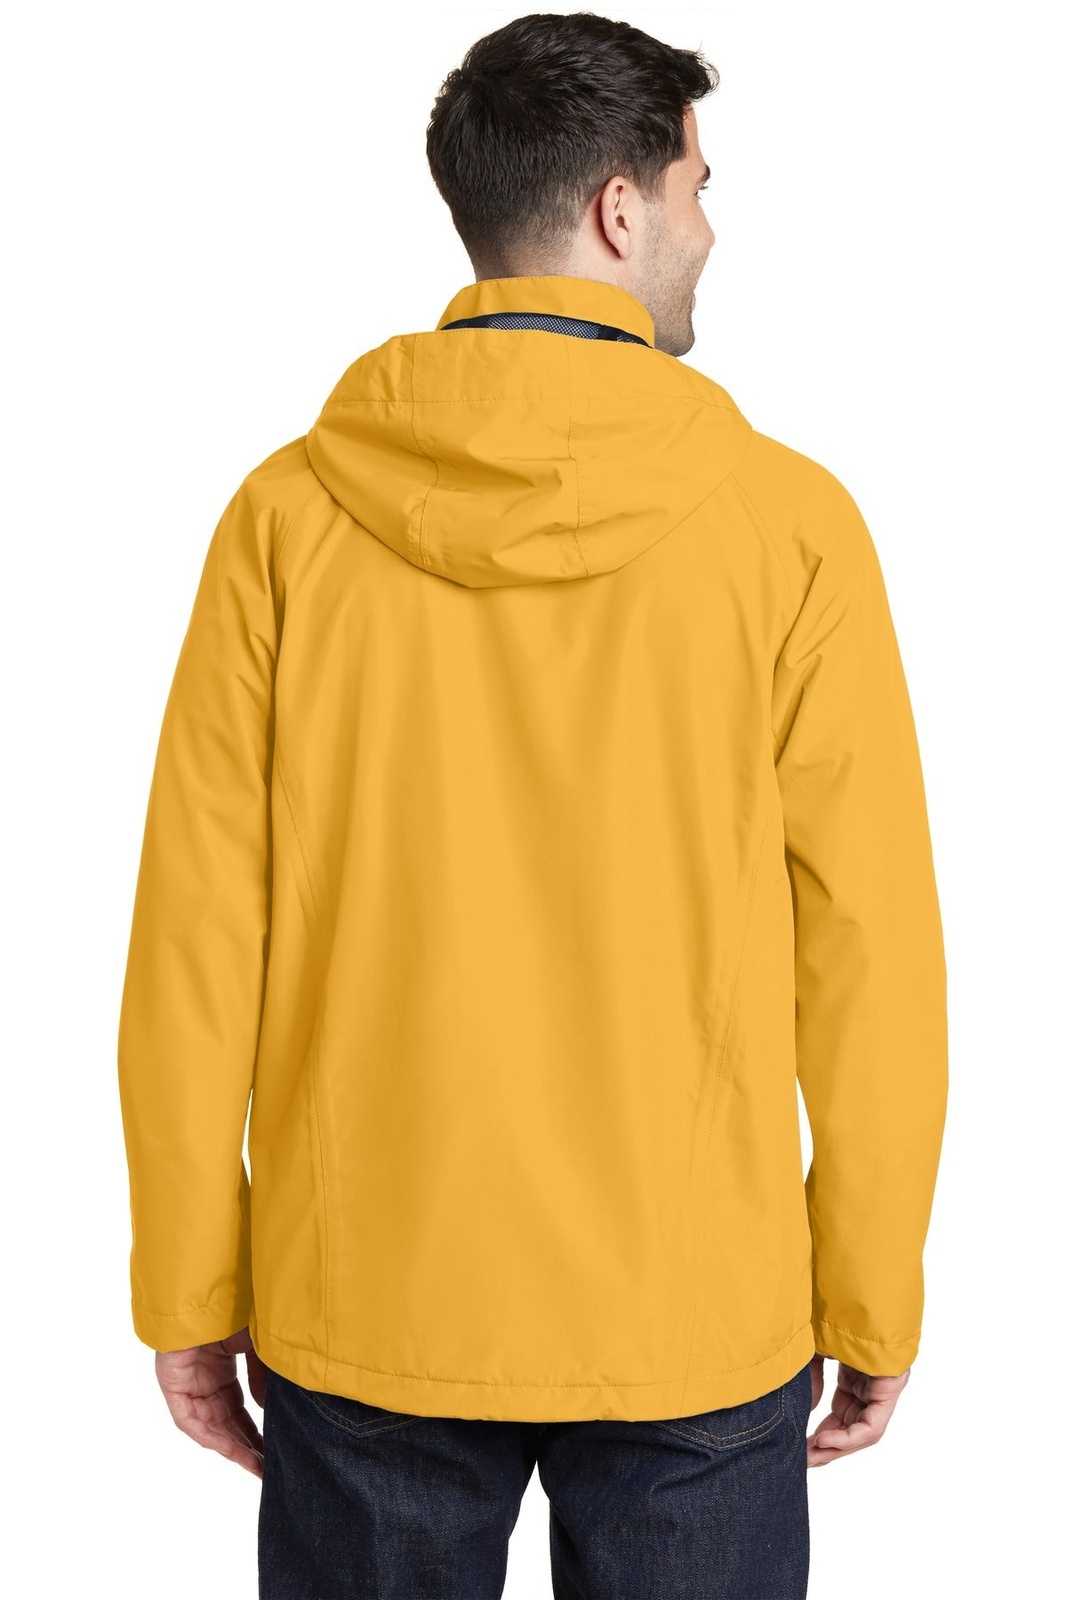 Port Authority J333 Torrent Waterproof Jacket - Slicker Yellow - HIT a Double - 1